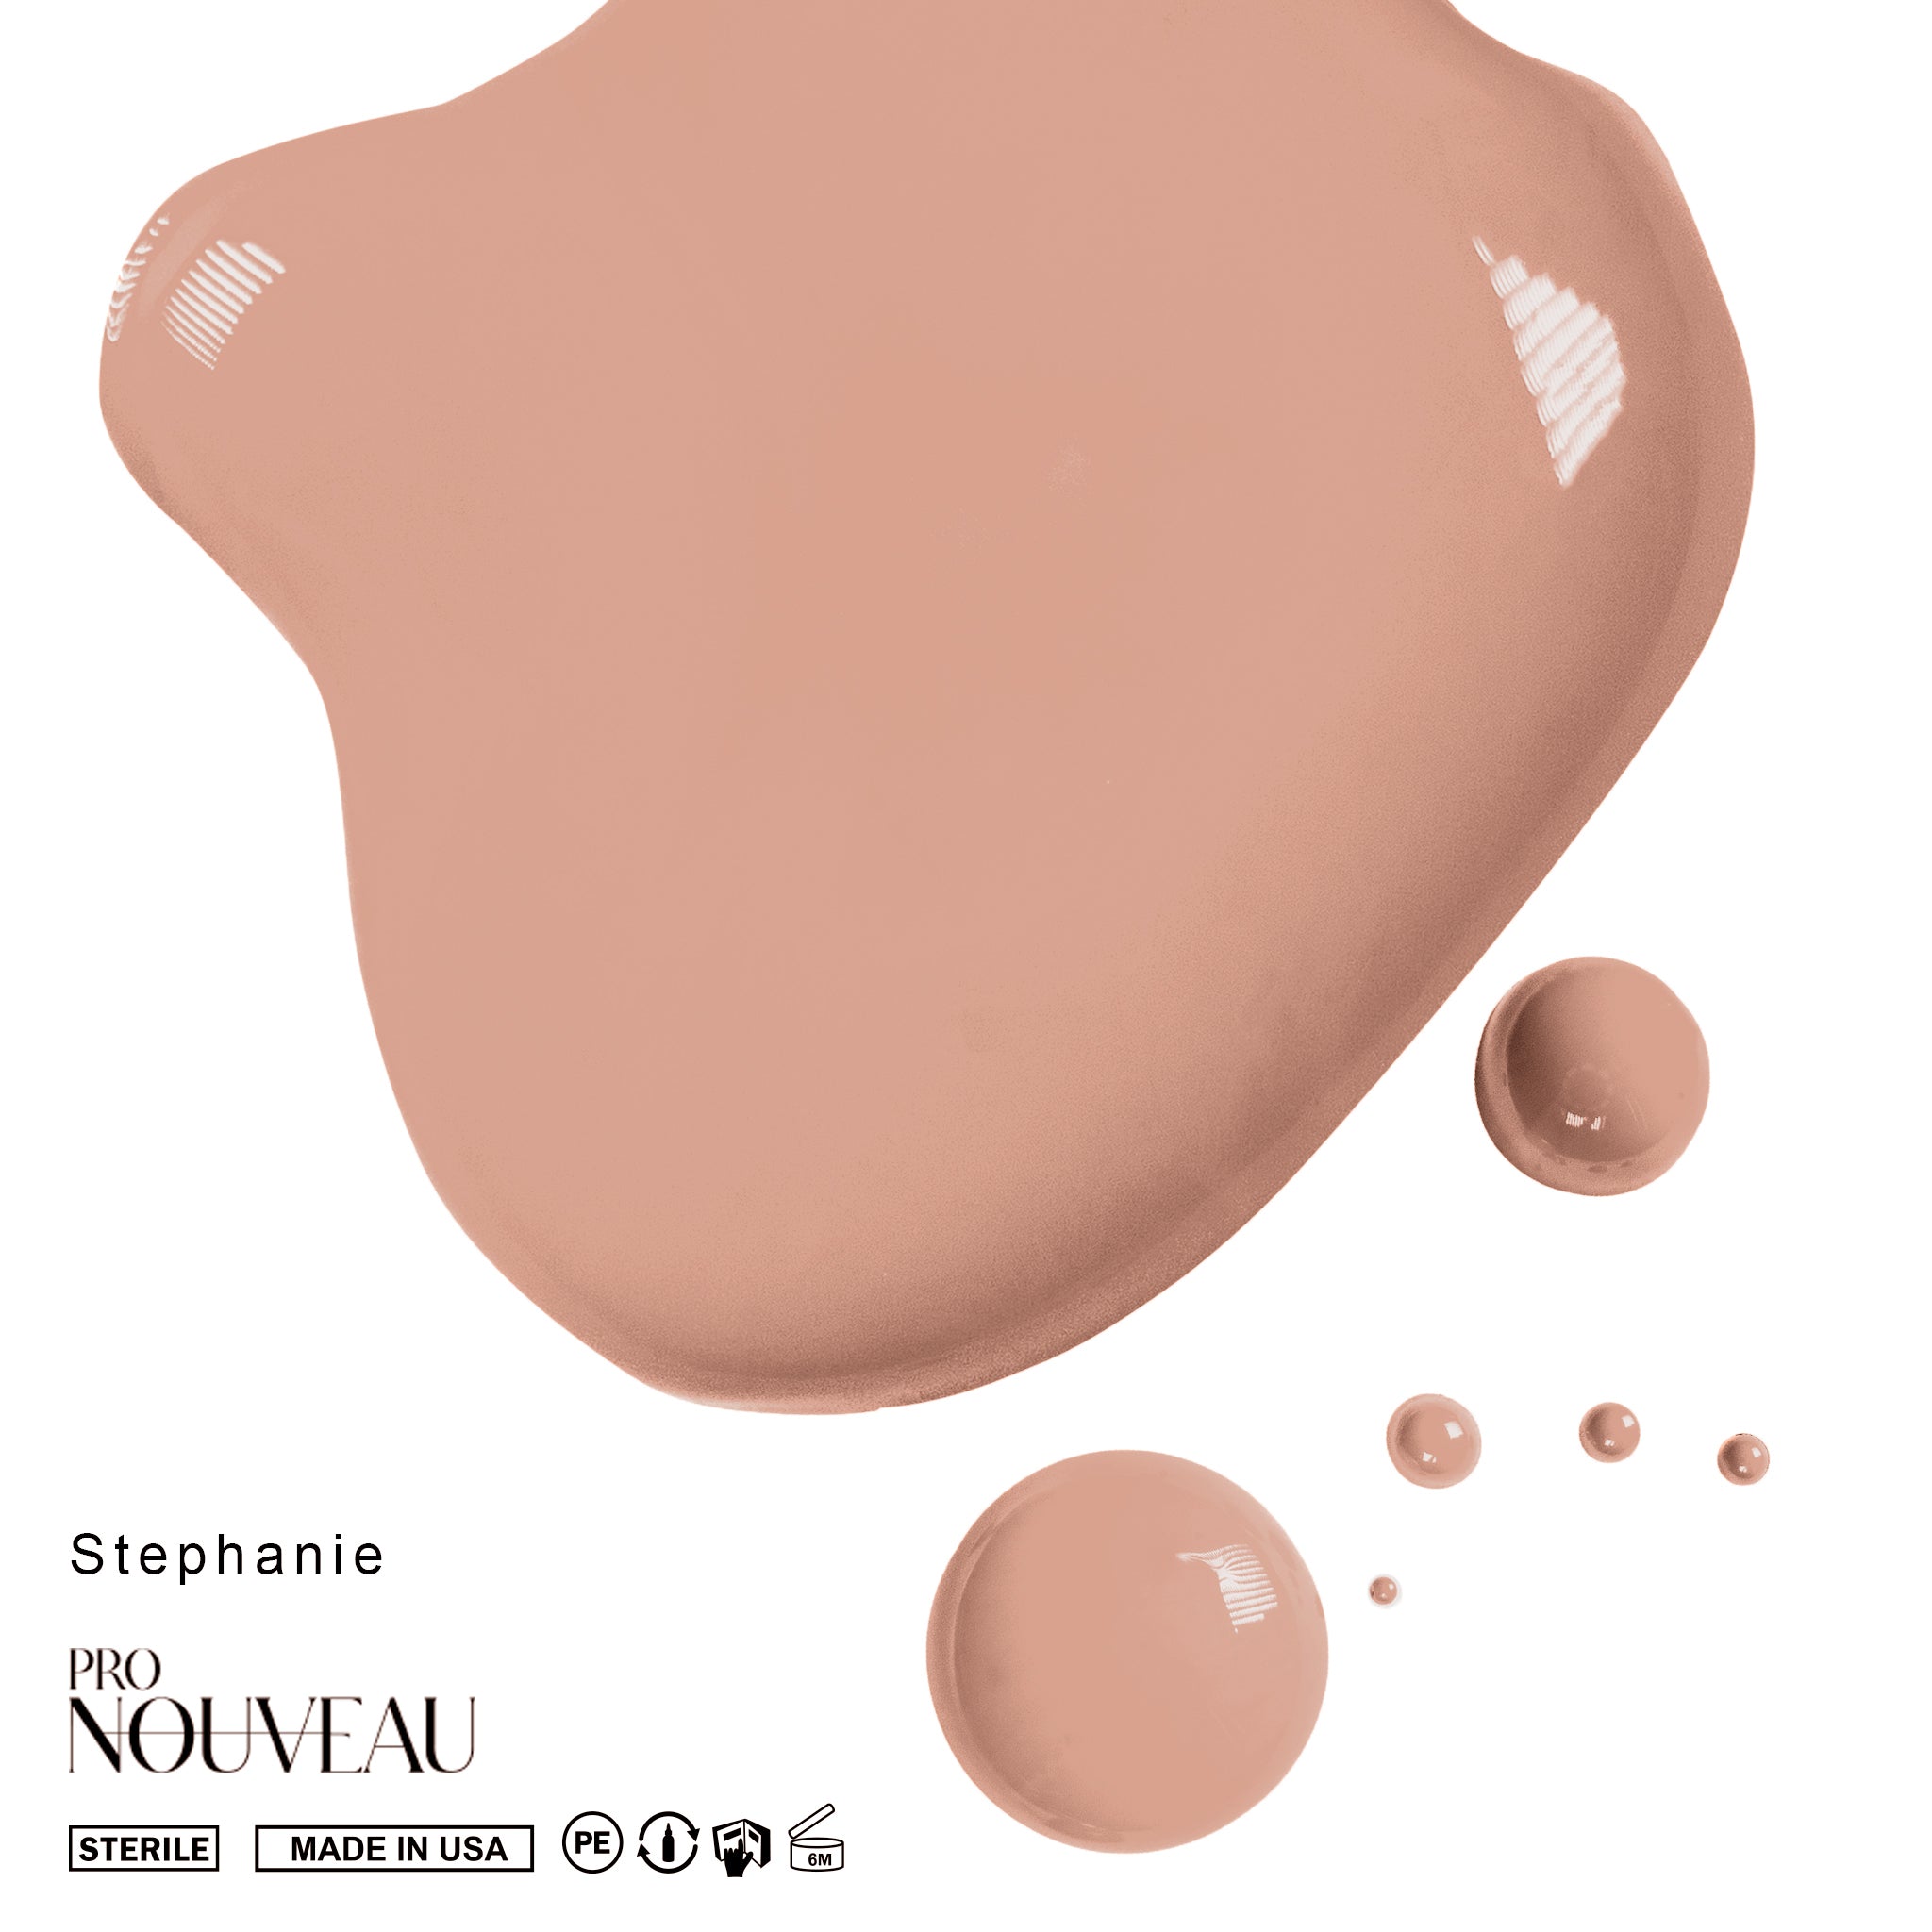 Pro Nouveau - Stephanie